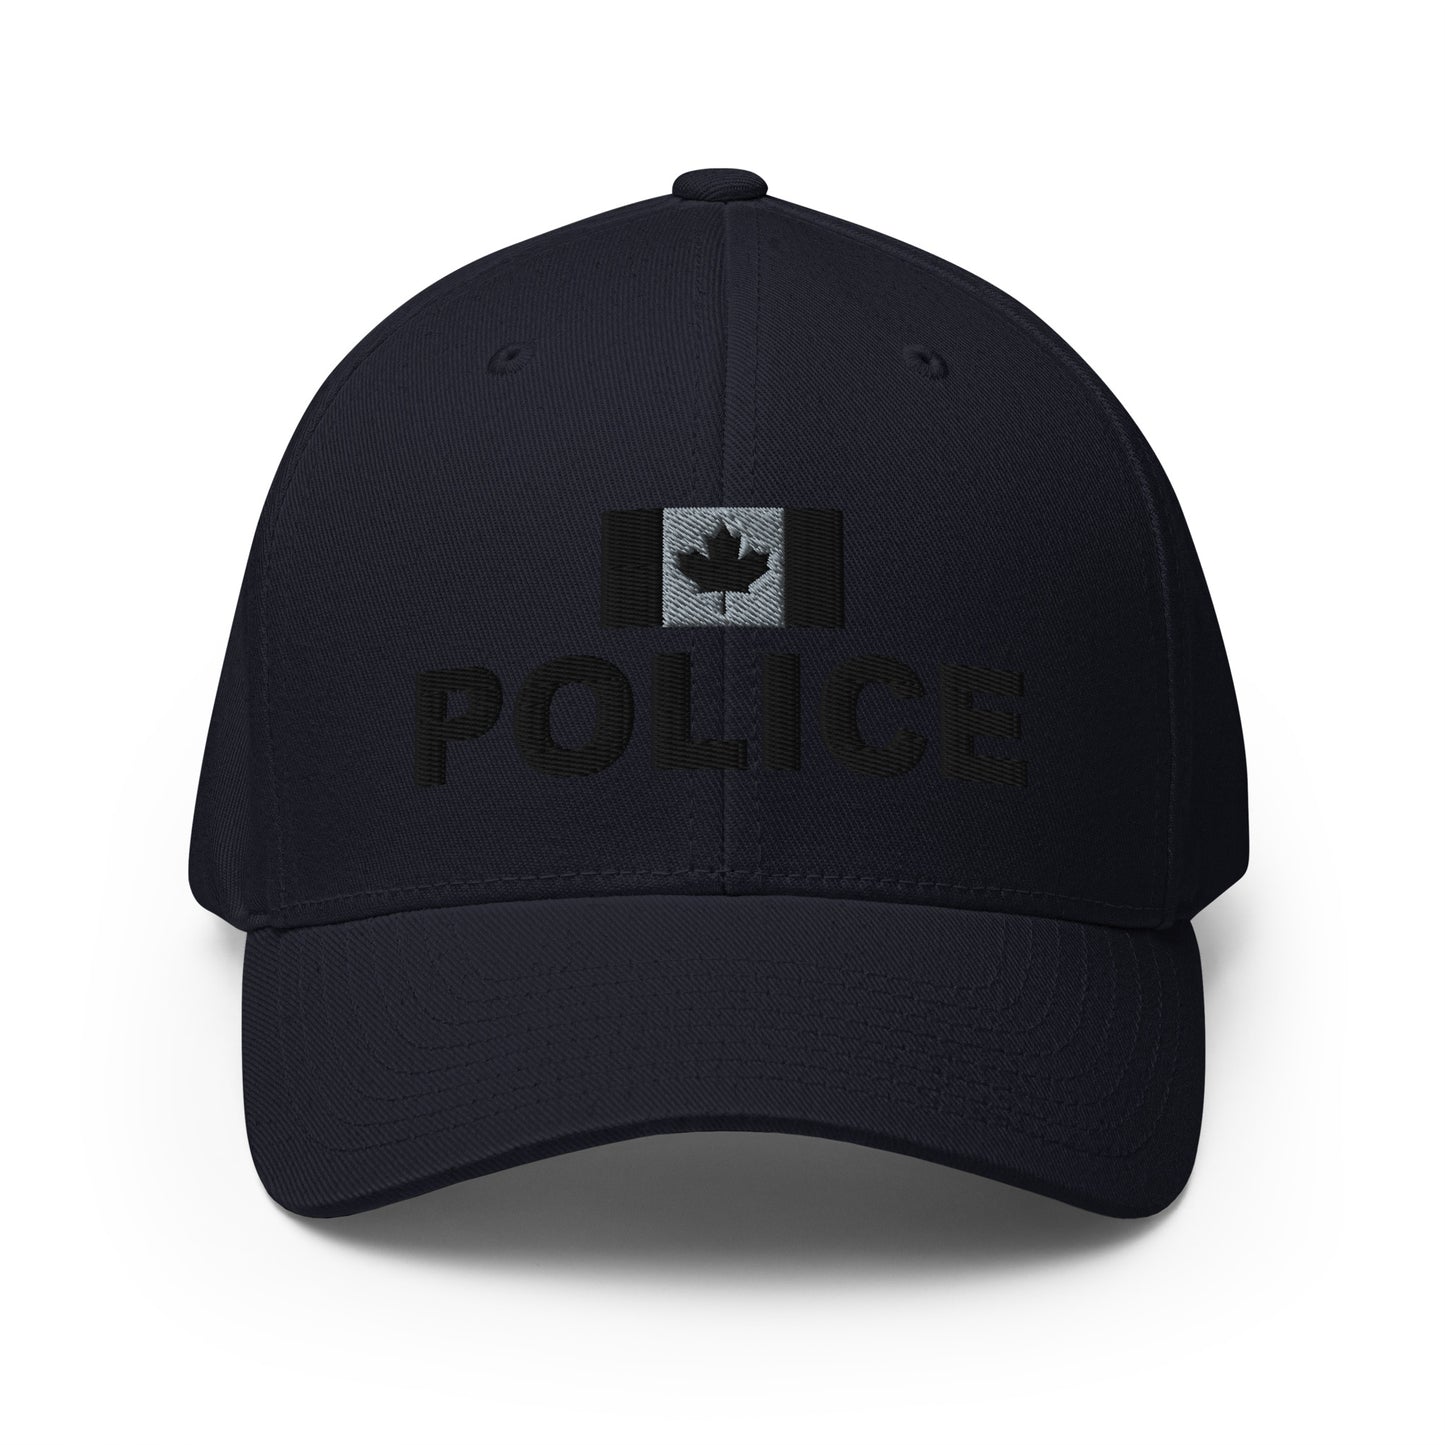 Canadian Police Subdued Flexfit Hat-911 Duty Gear Canada-911 Duty Gear Canada